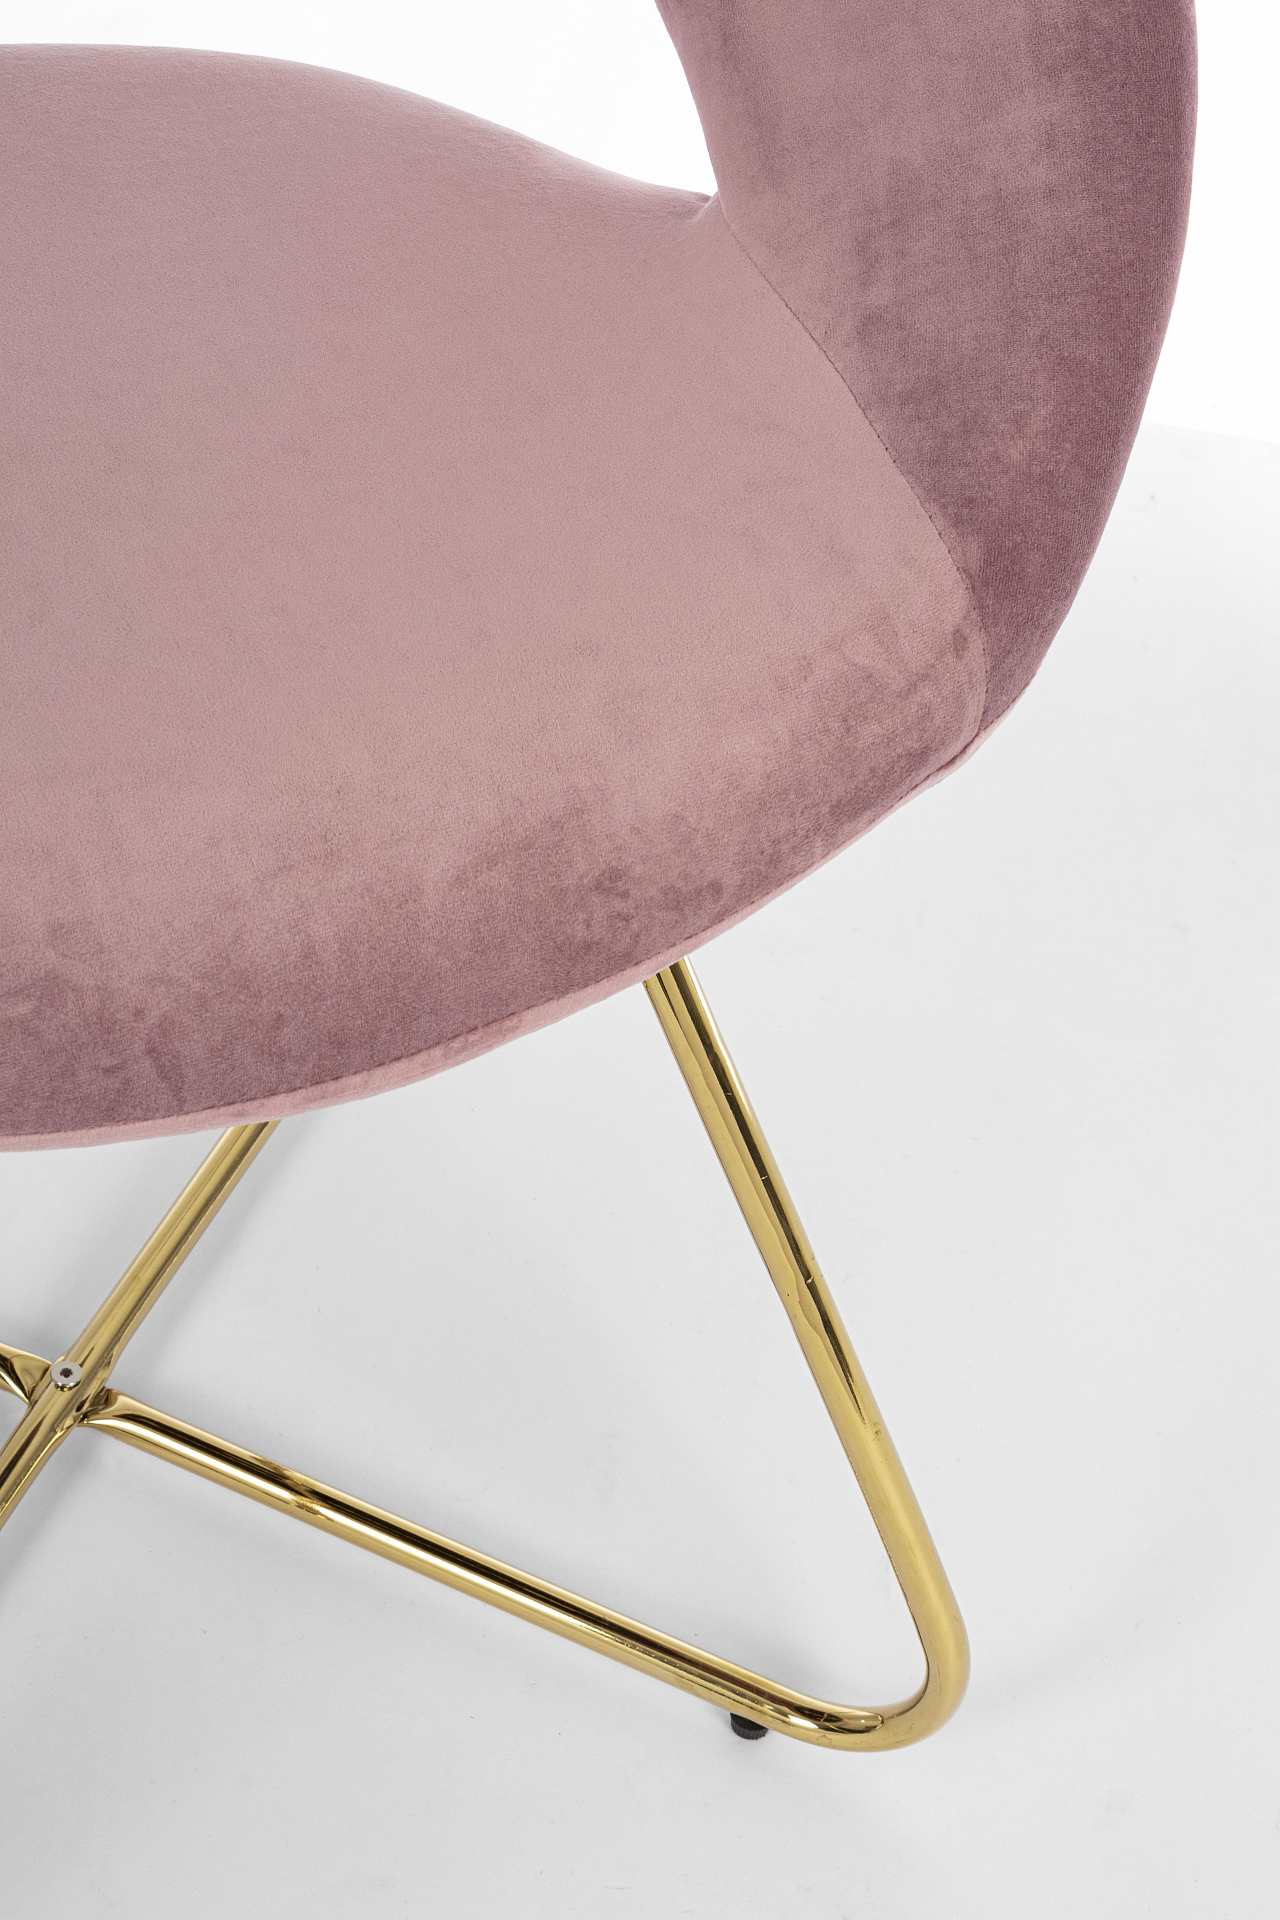 Der Sessel Vanity überzeugt mit seinem modernen Design. Gefertigt wurde er aus Stoff in Samt-Optik, welcher einen rosa Farbton besitzt. Das Gestell ist aus Metall und hat eine goldene Farbe. Der Sessel besitzt eine Sitzhöhe von 49 cm. Die Breite beträgt 5